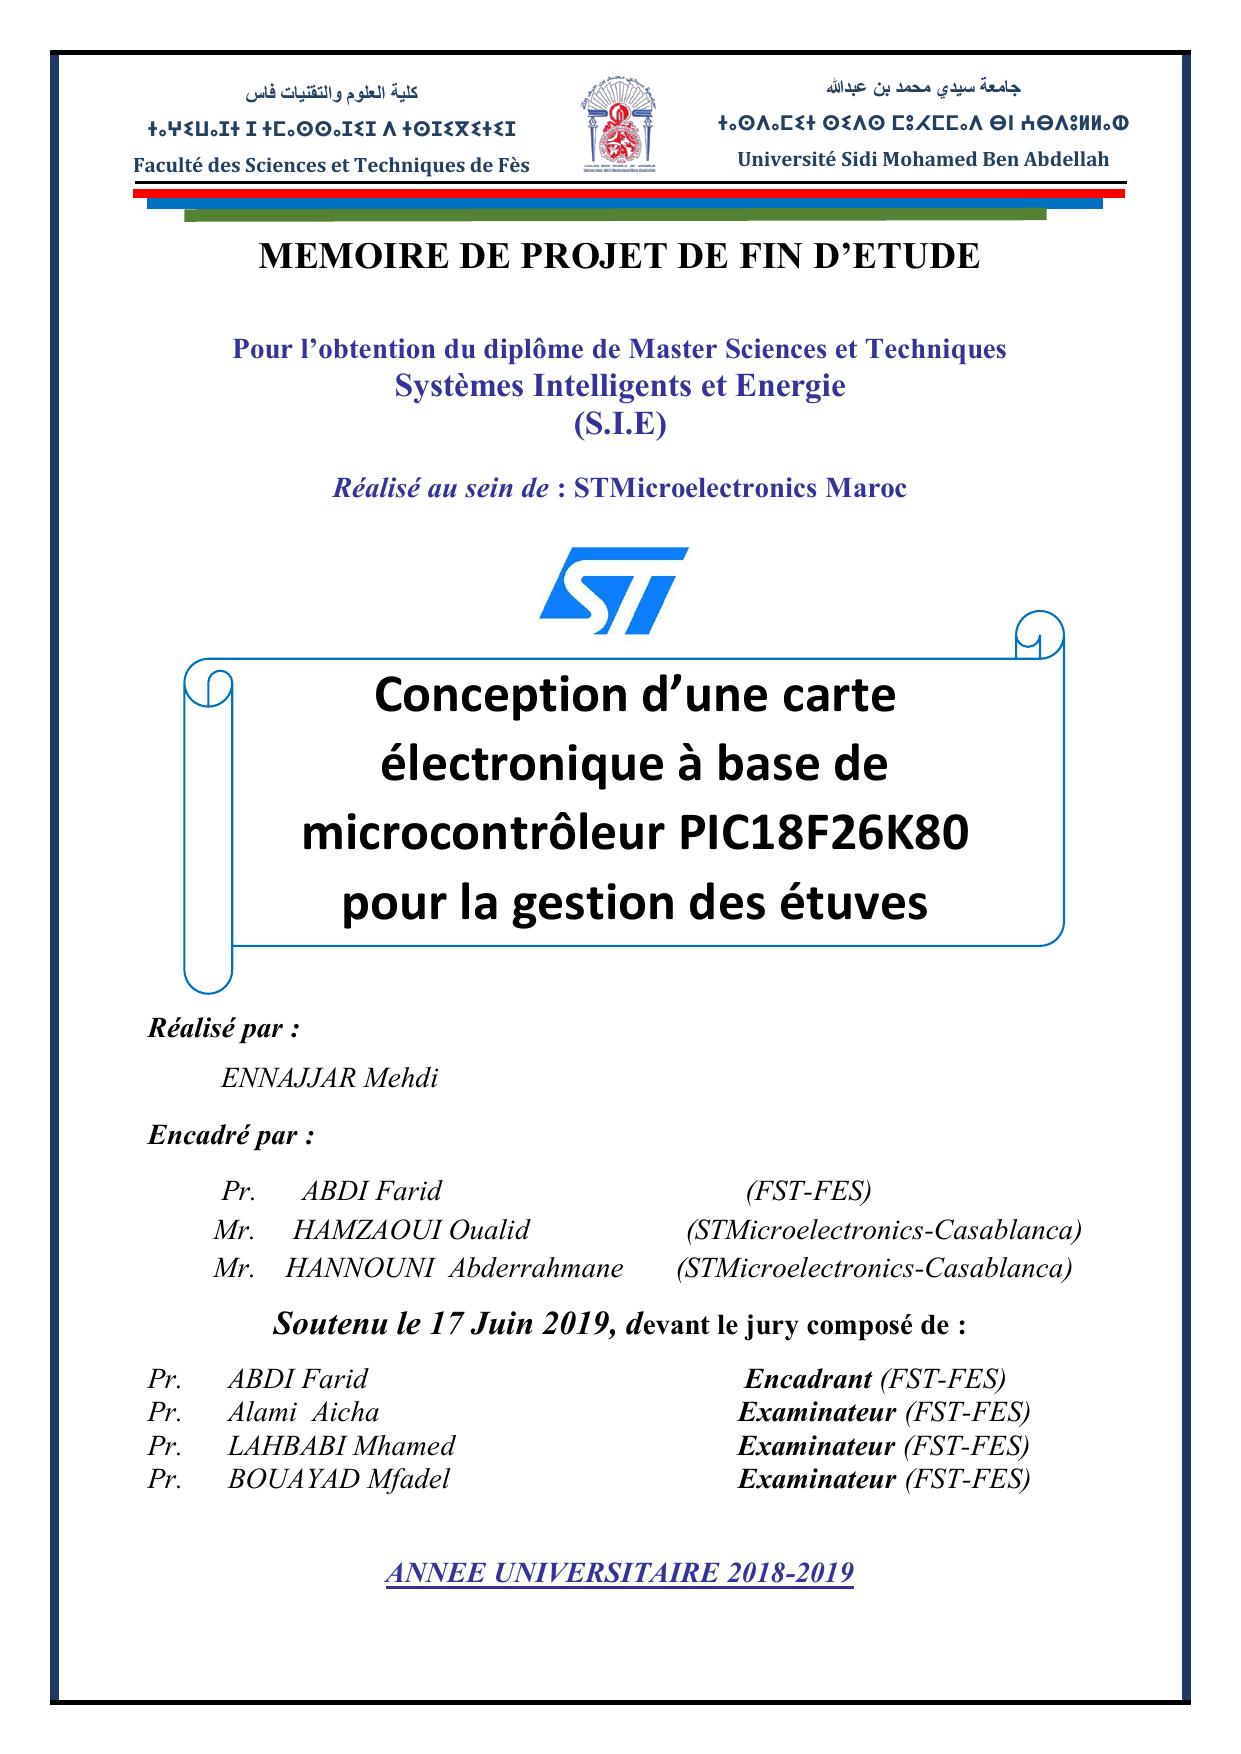 Conception d’une carte électronique à base de microcontrôleur PIC18F26K80 pour la gestion des étuves